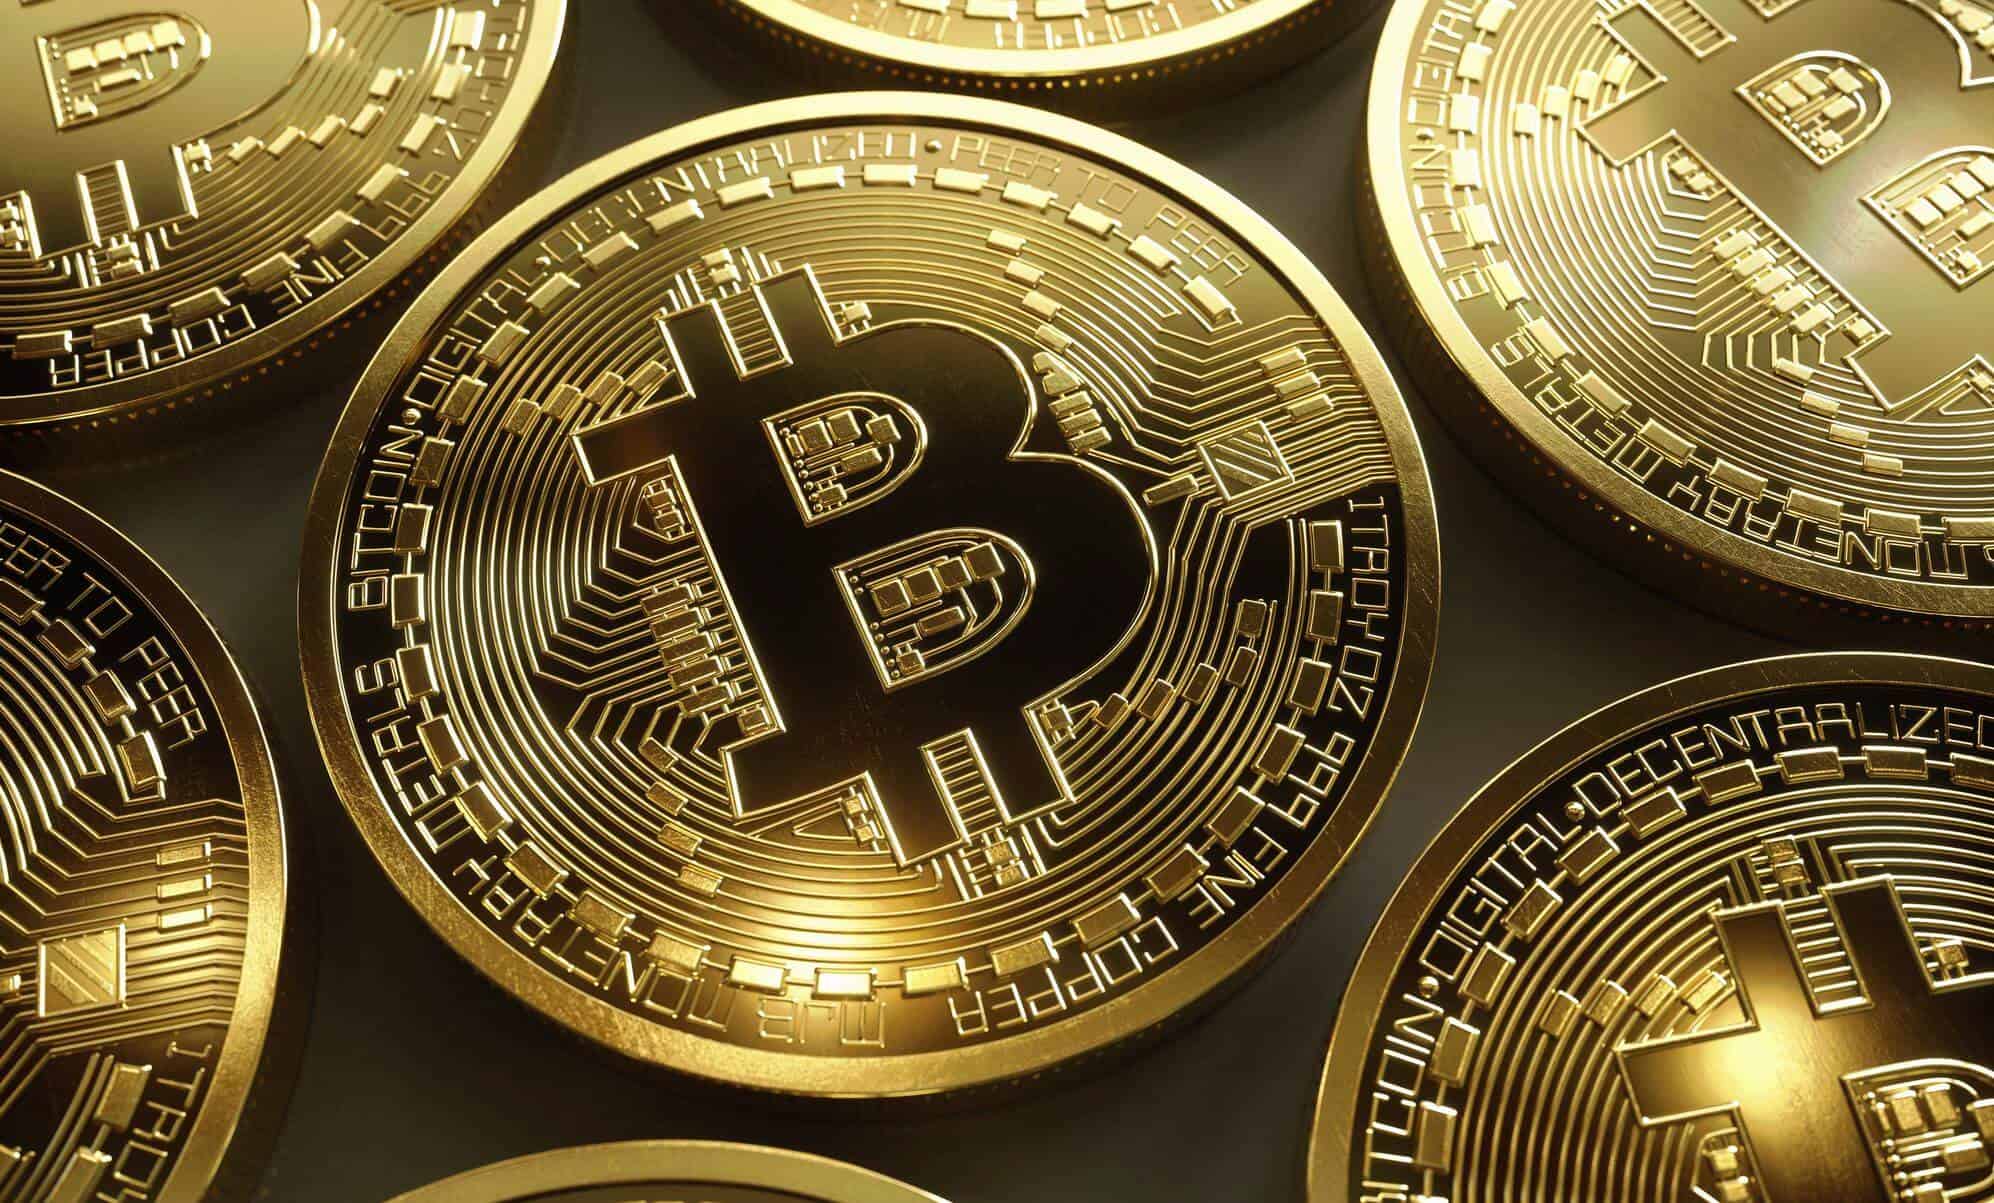 buy bitcoin online reddit